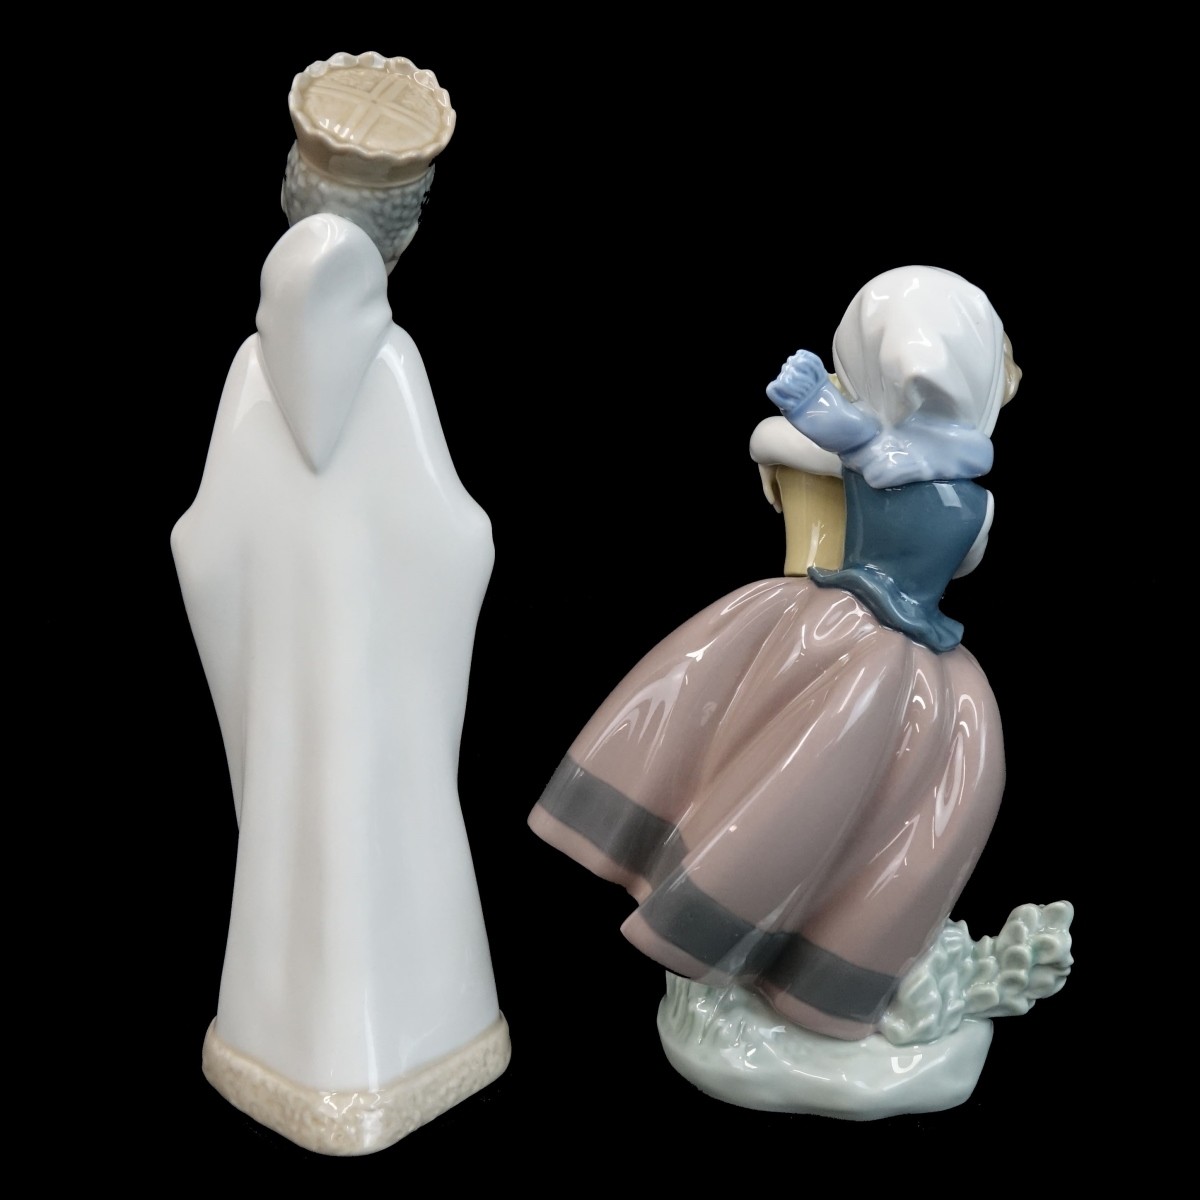 Lladro Figurines